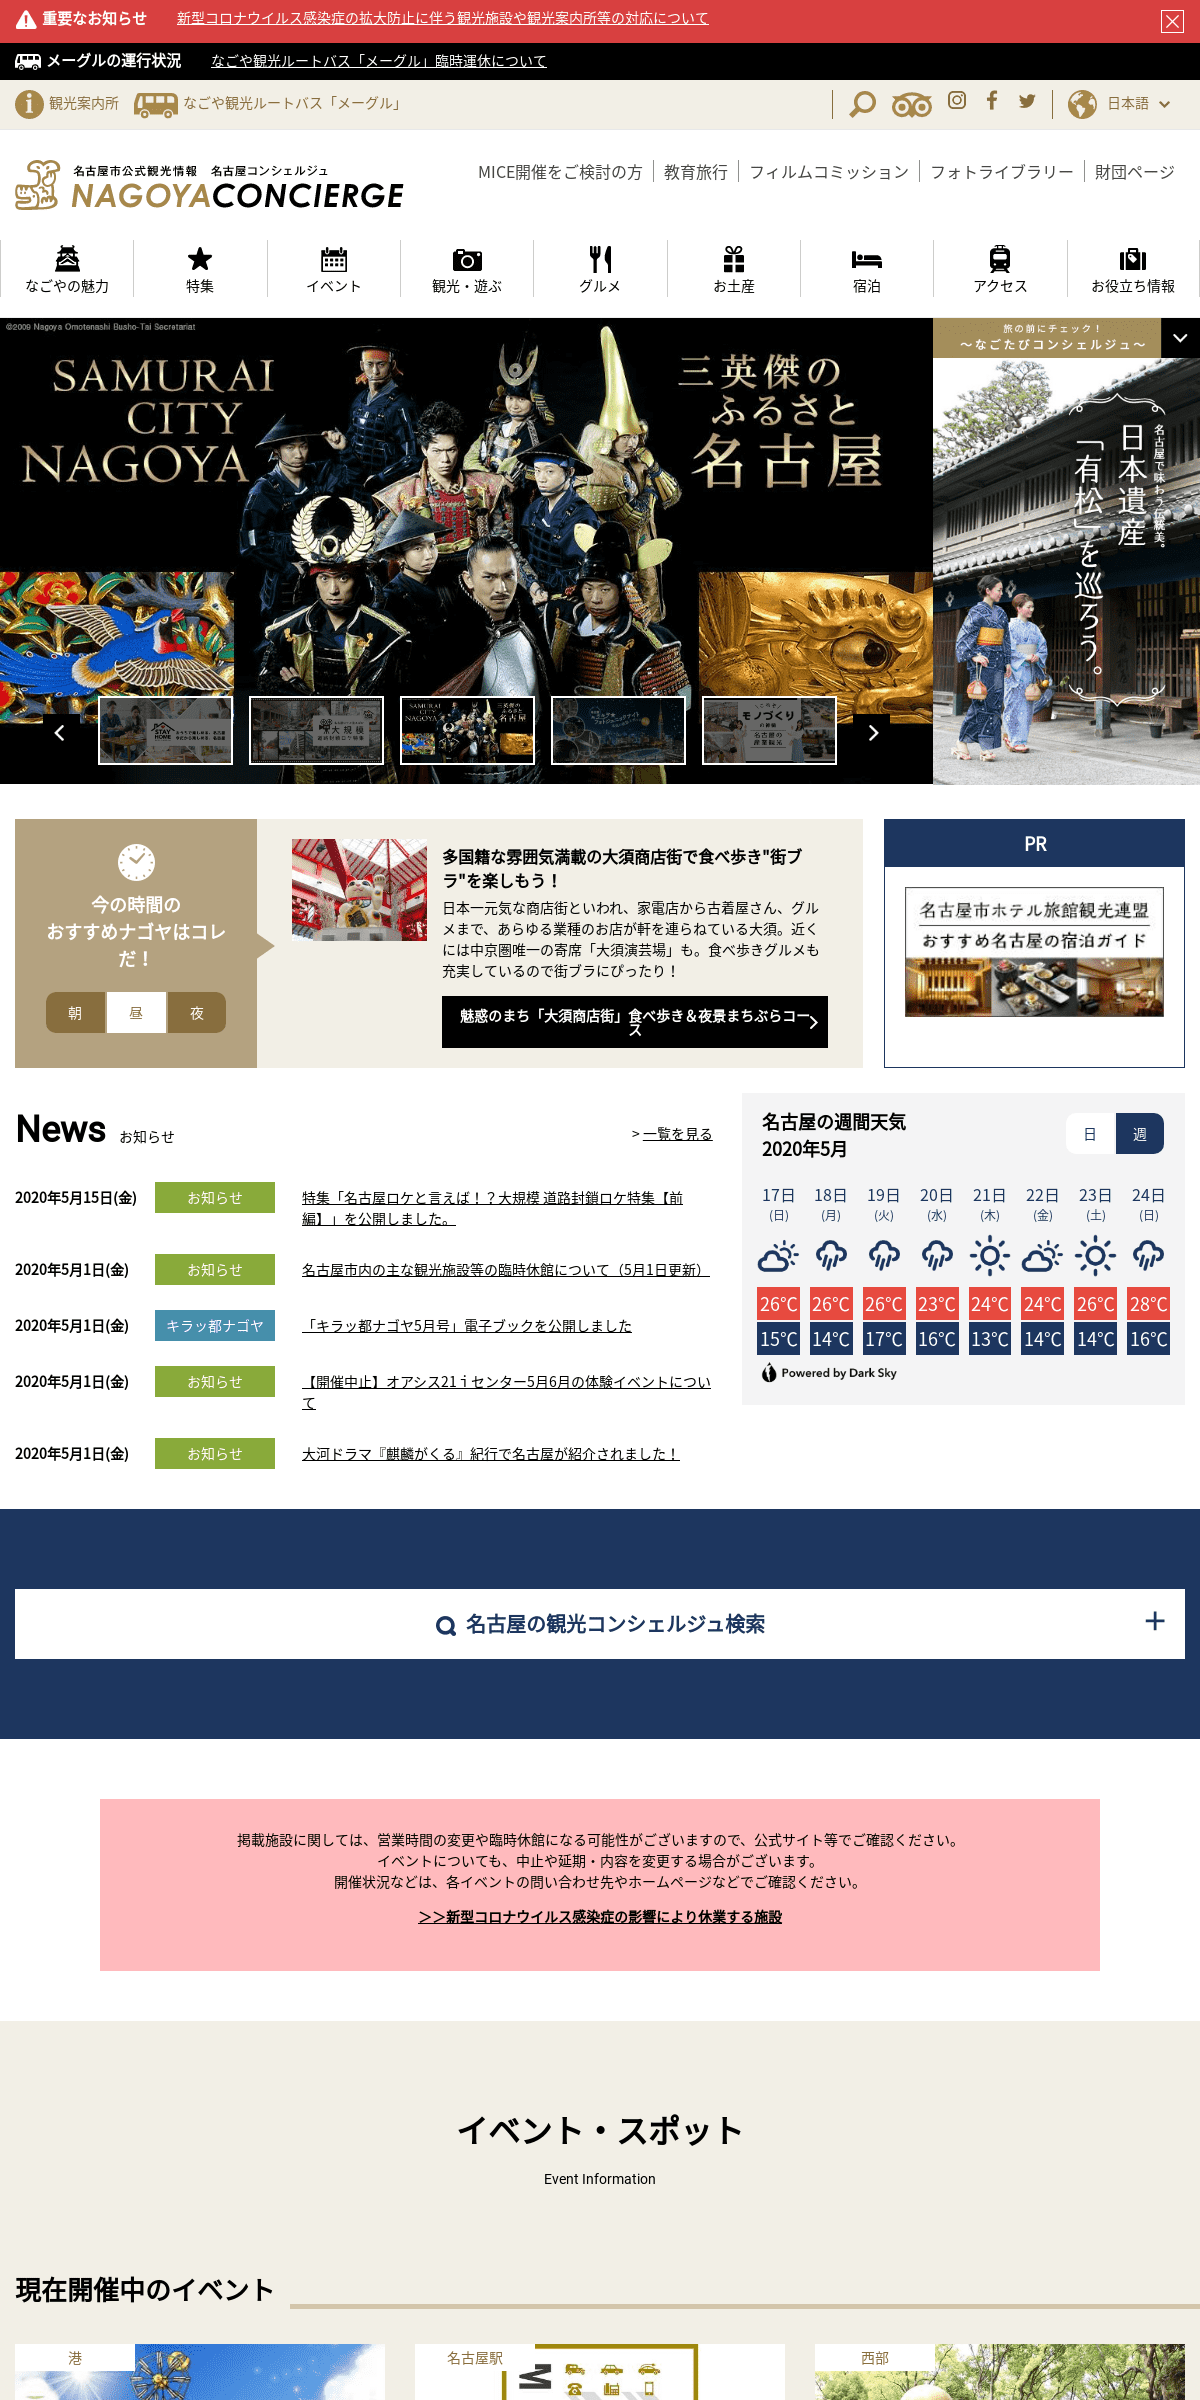 A complete backup of nagoya-info.jp